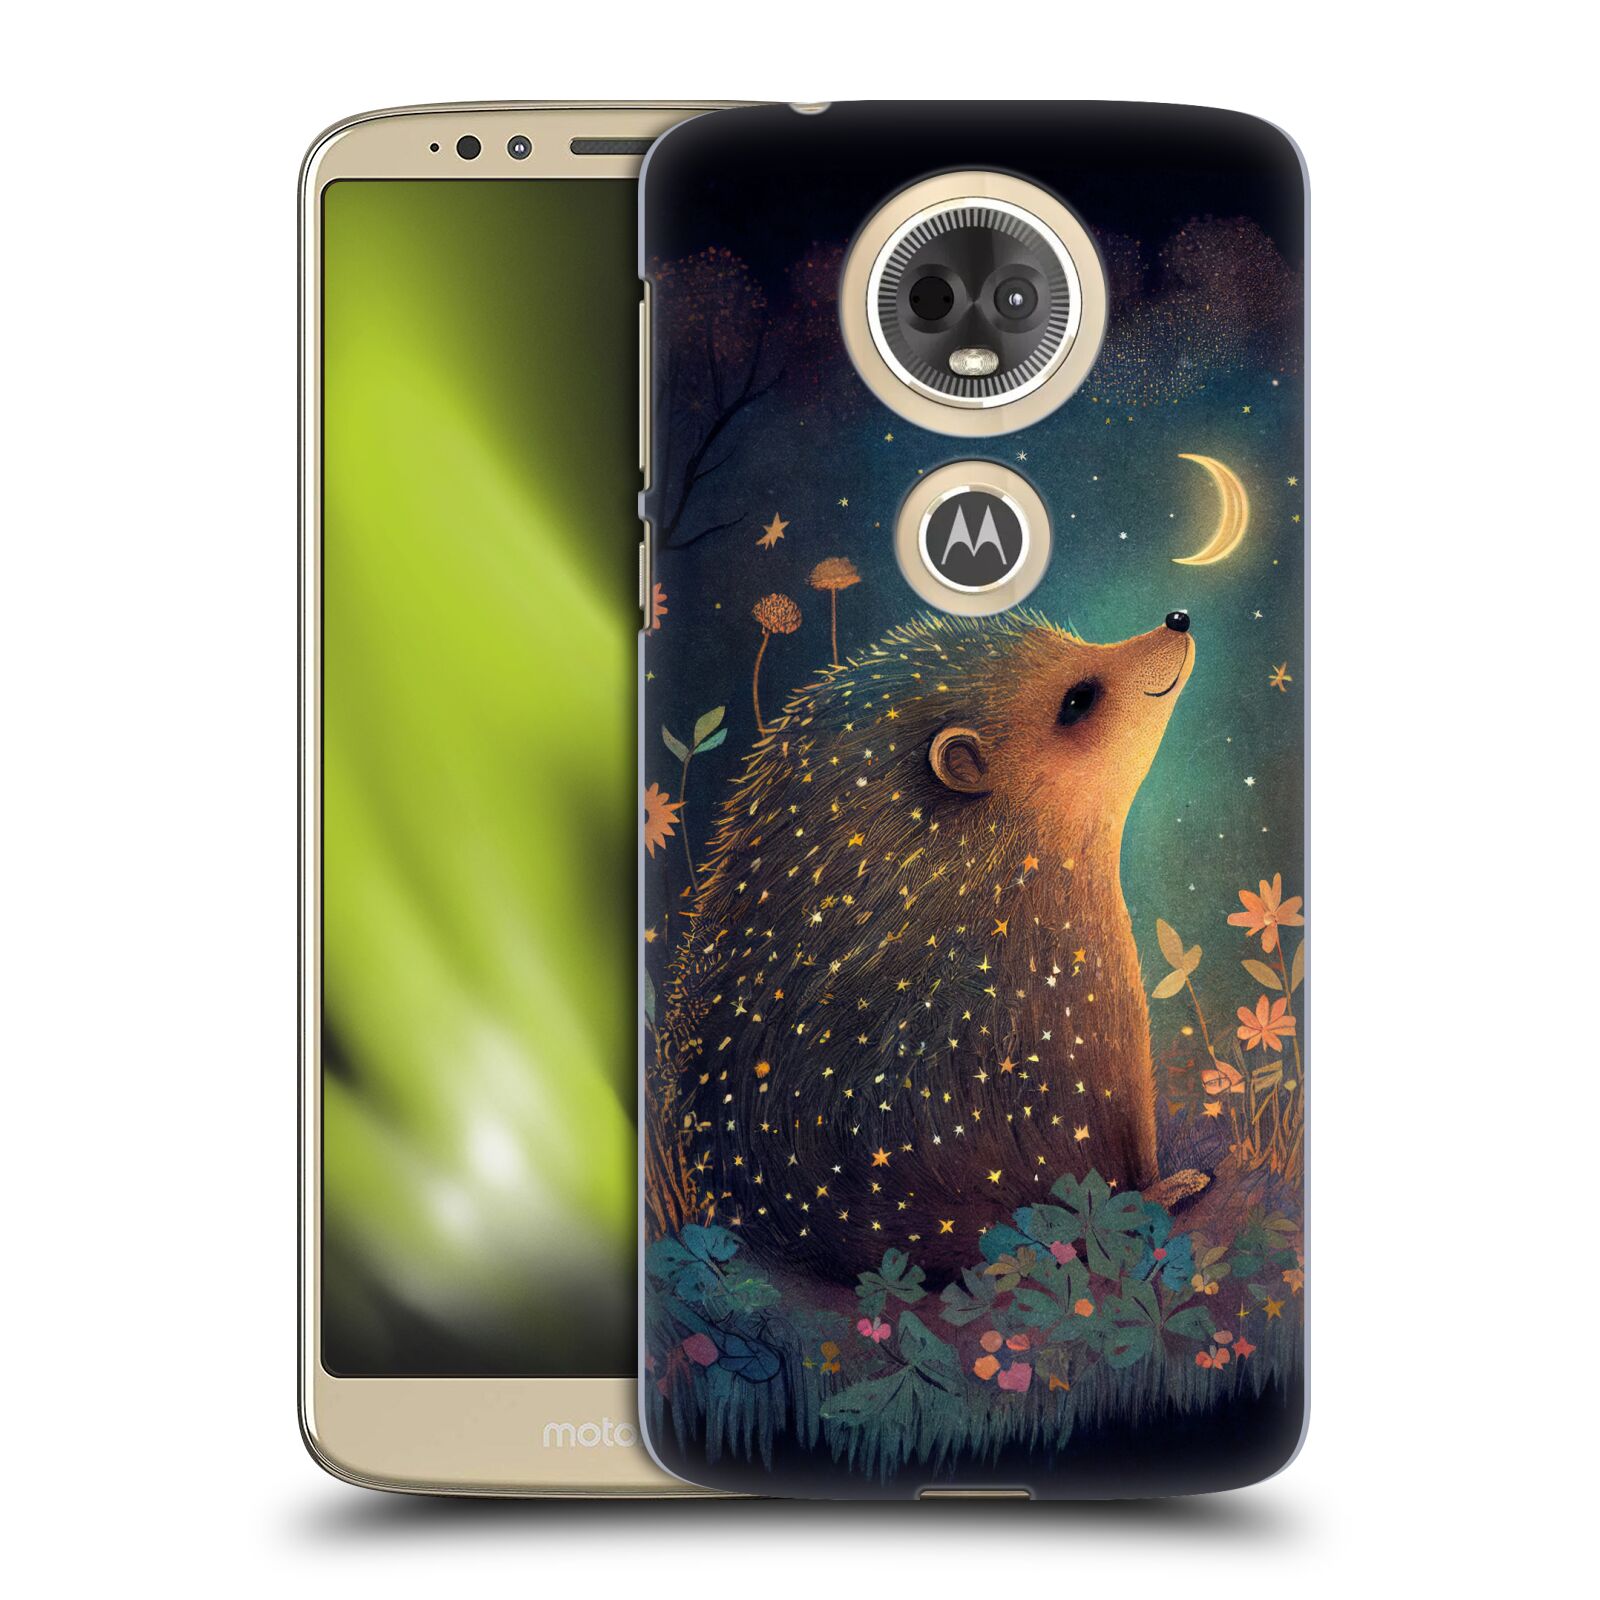 Obal na mobil Motorola Moto E5 PLUS - HEAD CASE - JK Stewart malý ježeček